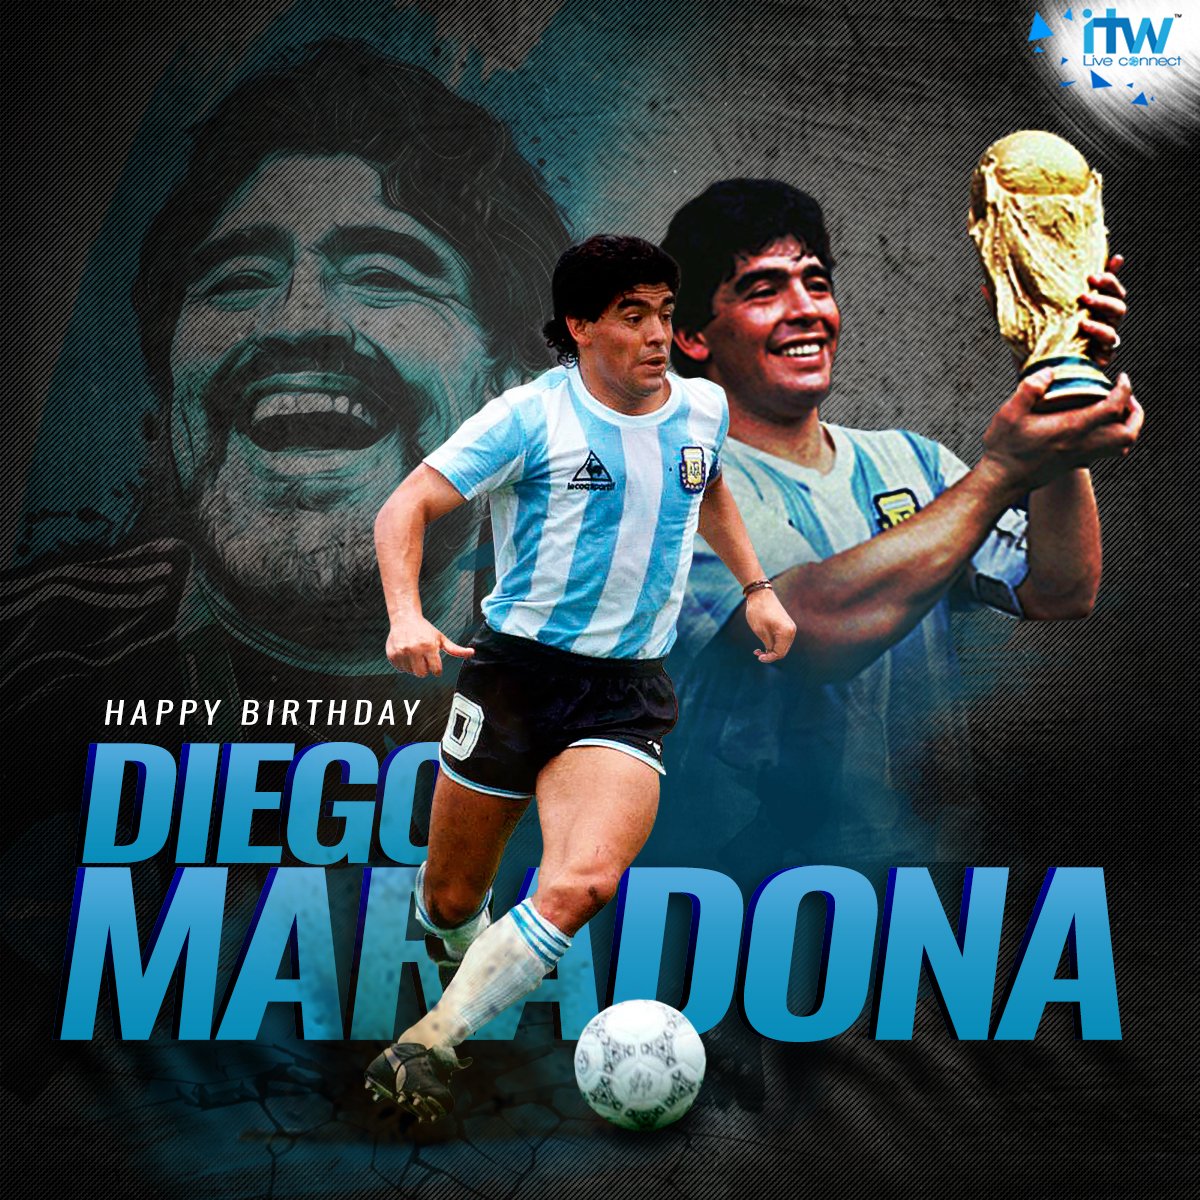 Wishing a very Happy Birthday to the legendary Diego Maradona! 